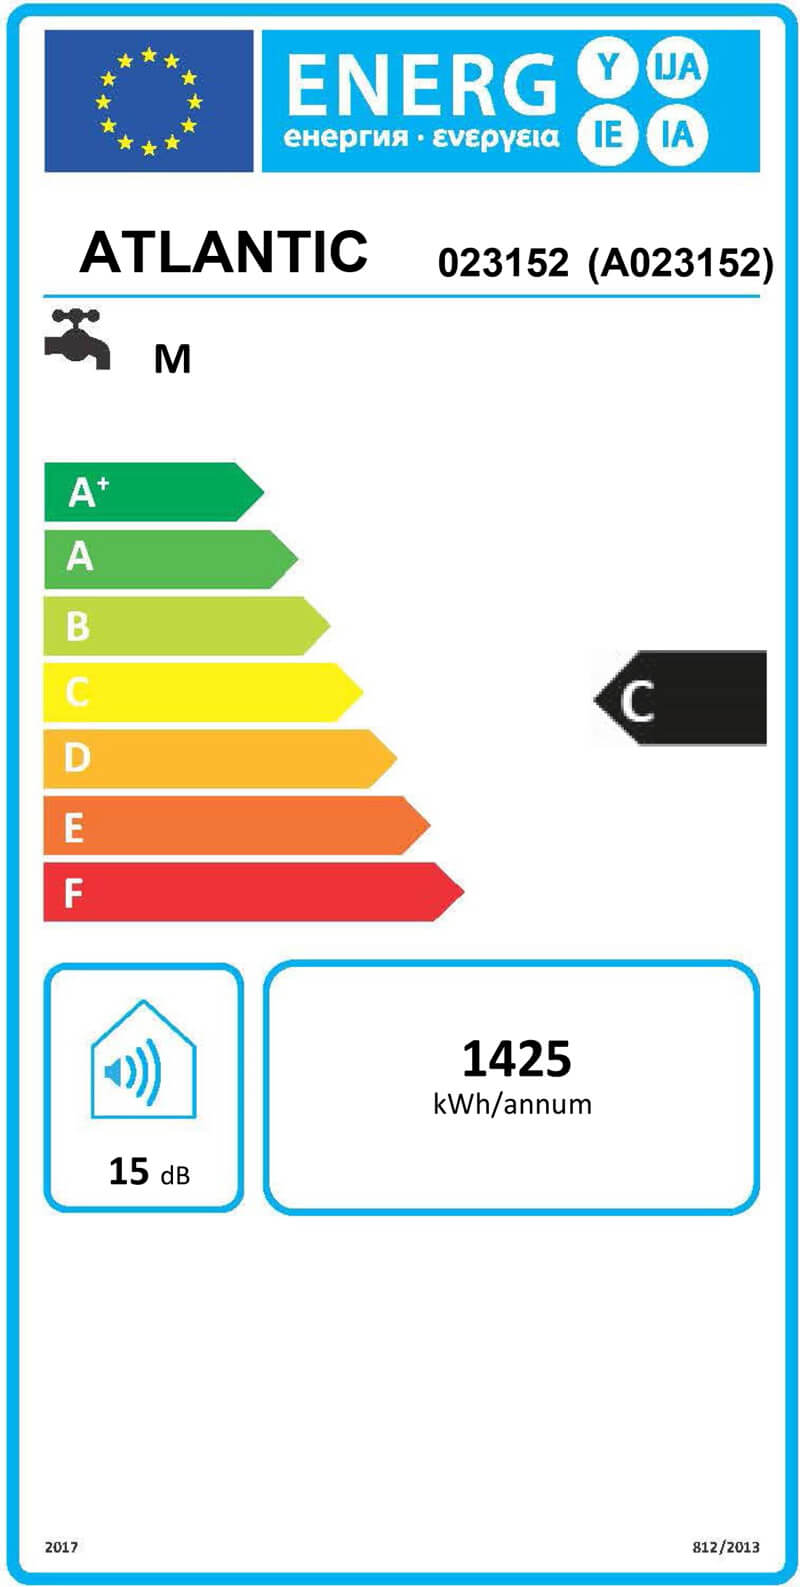 étiquette énergétique ATLANTIC CHAUFFEO 75L HM 023152 ErP